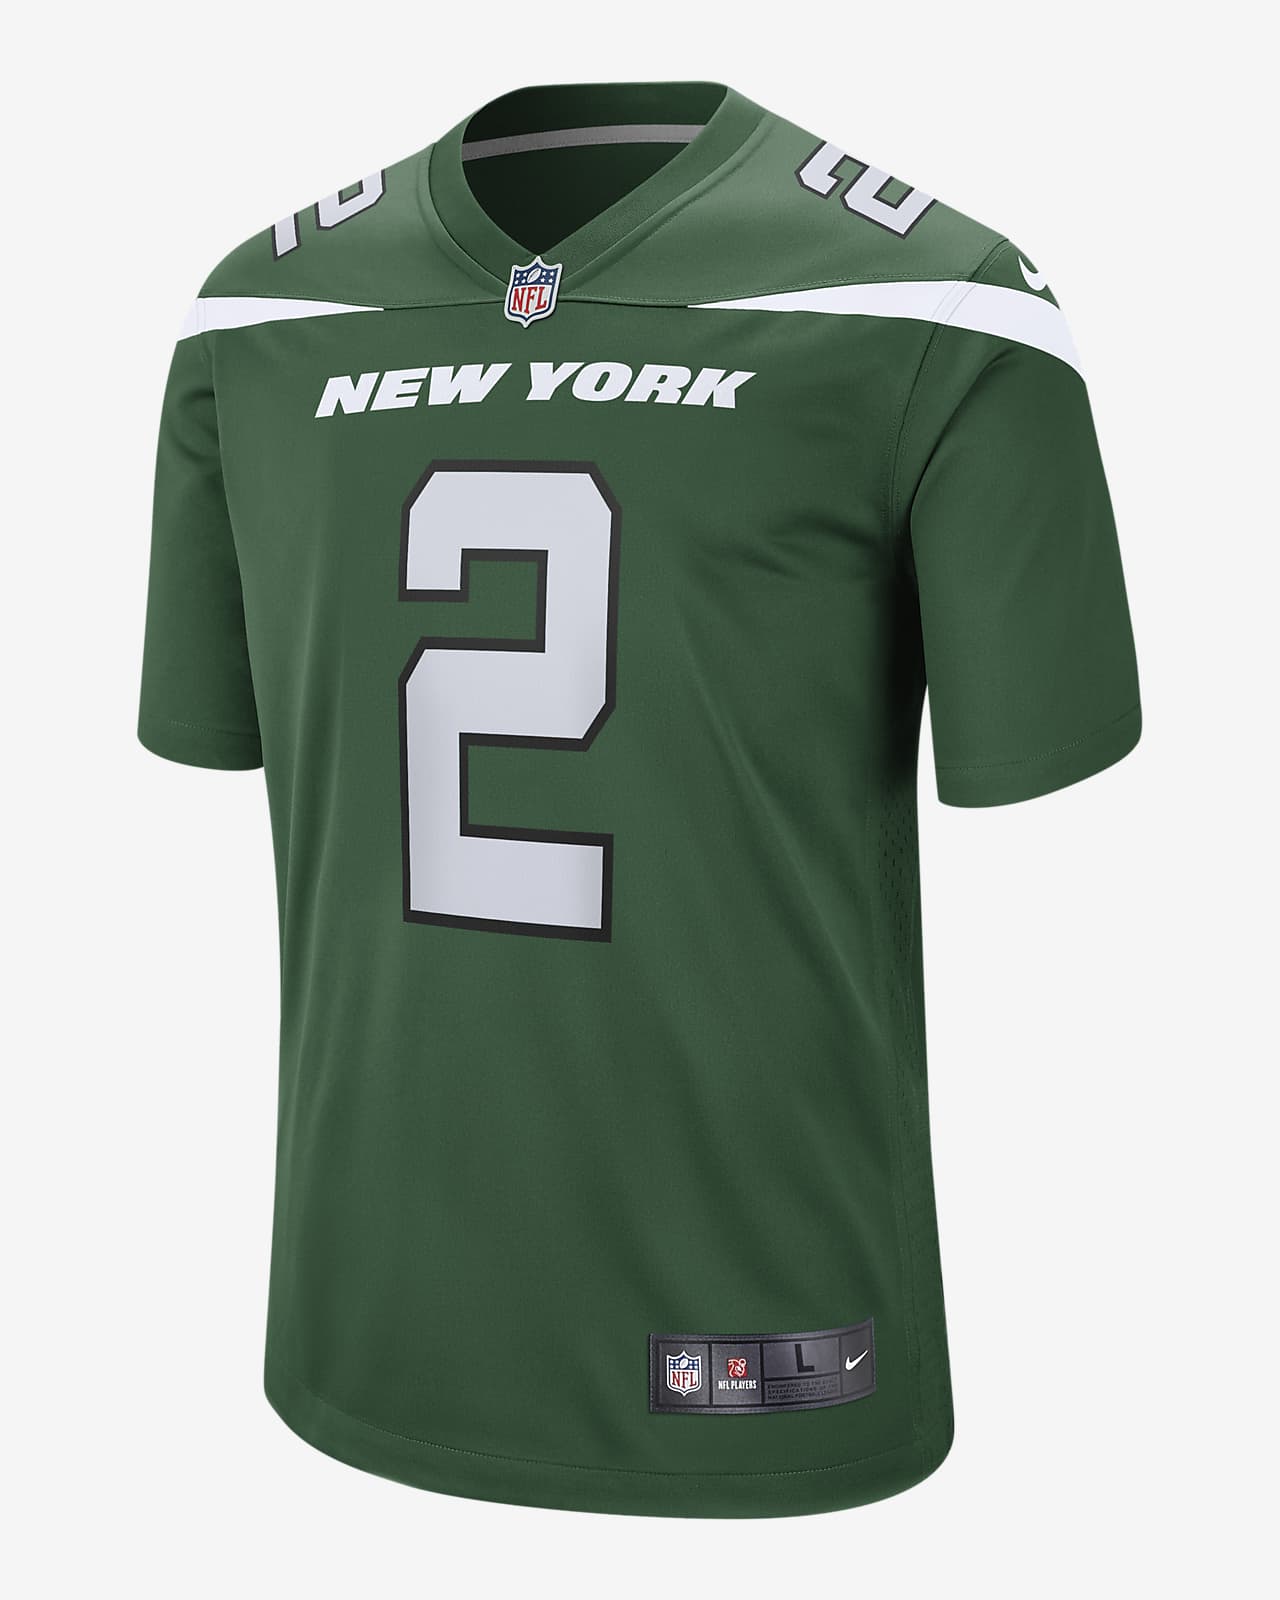 Ανδρική φανέλα αμερικανικού ποδοσφαίρου NFL New York Jets (Zach Wilson)